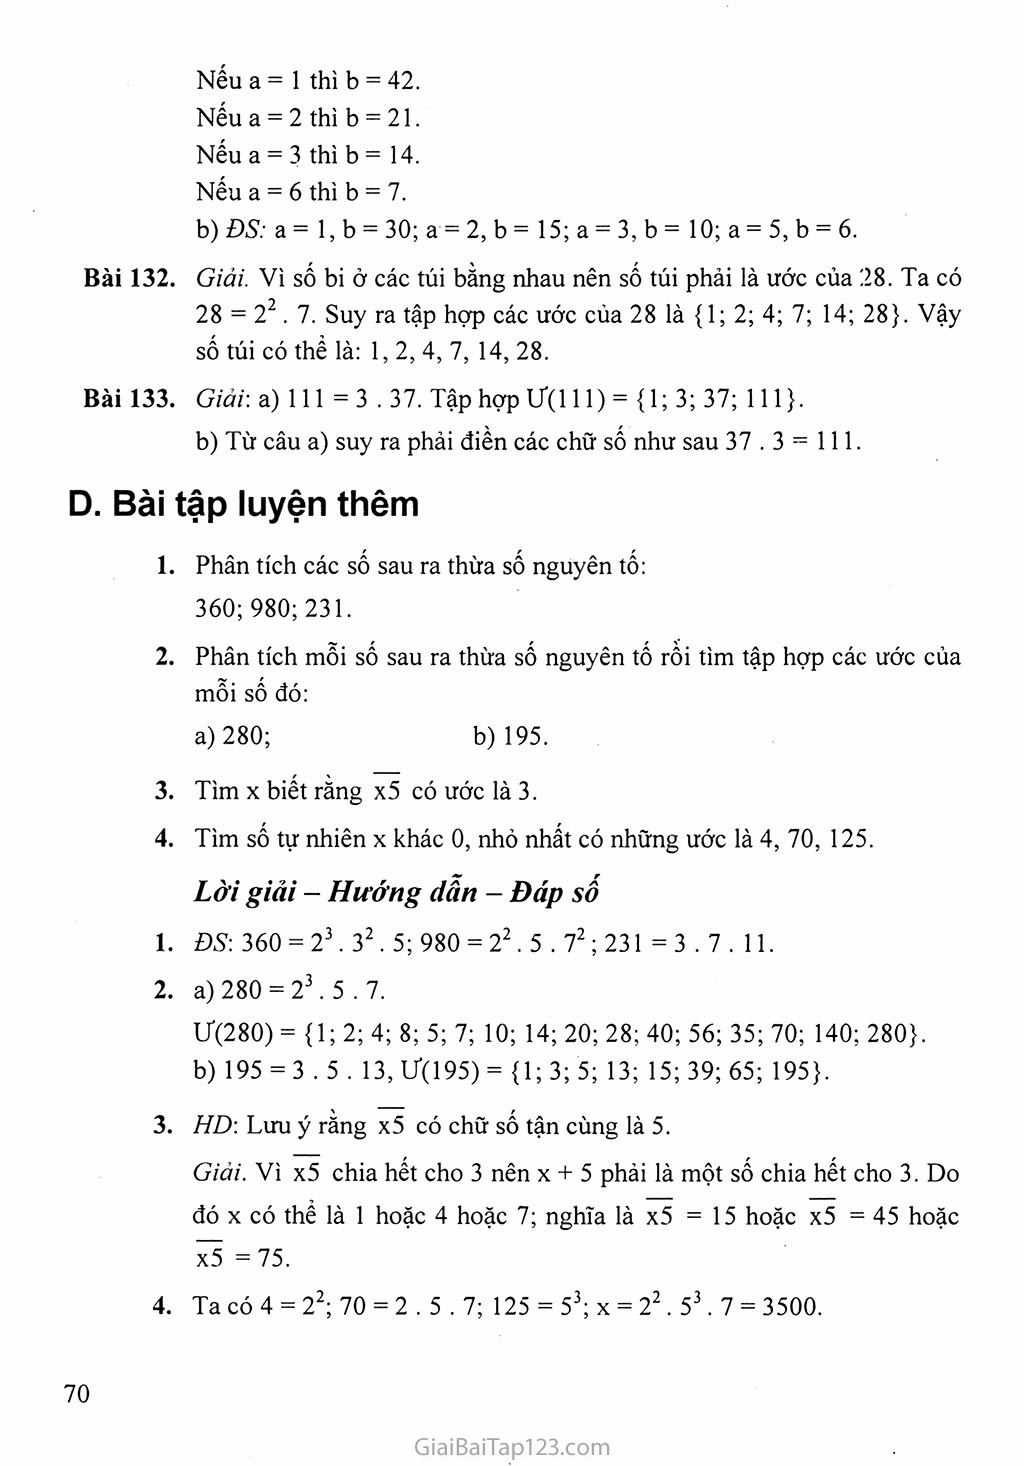 Bài 15. Phân tích một số ra thừa số nguyên tố trang 5